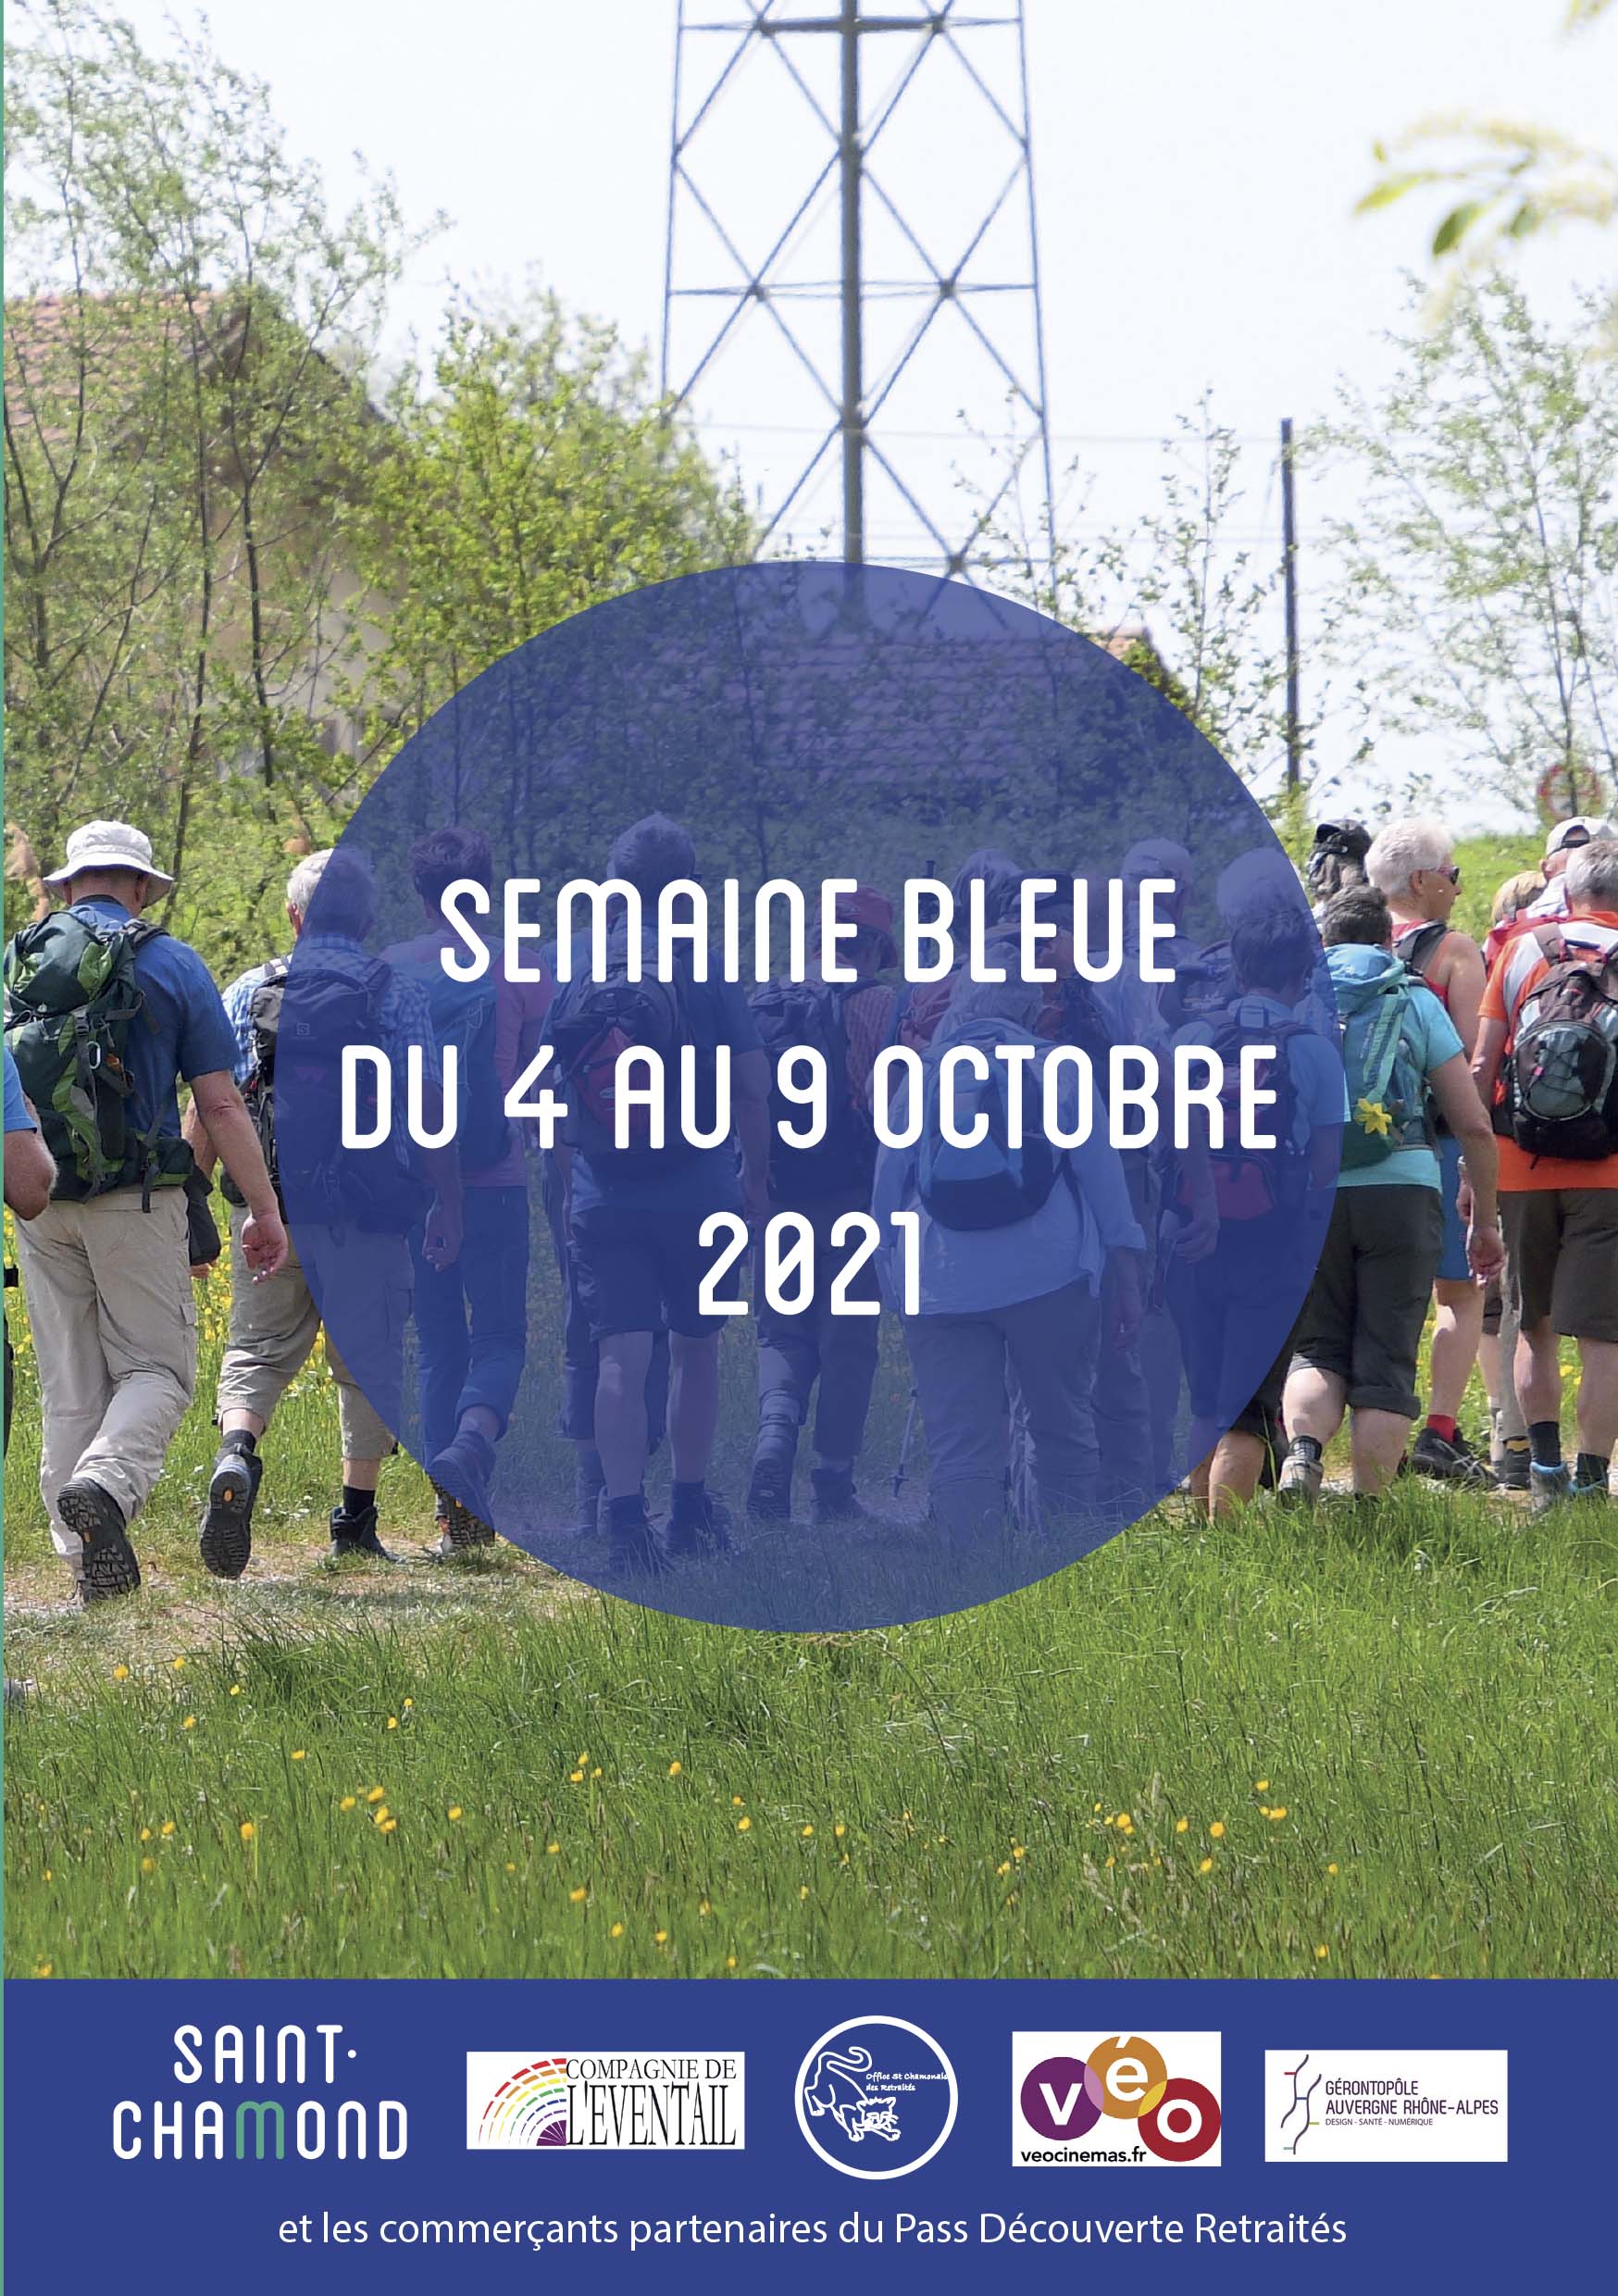 Semaine bleue 2021 à Saint-Chamond